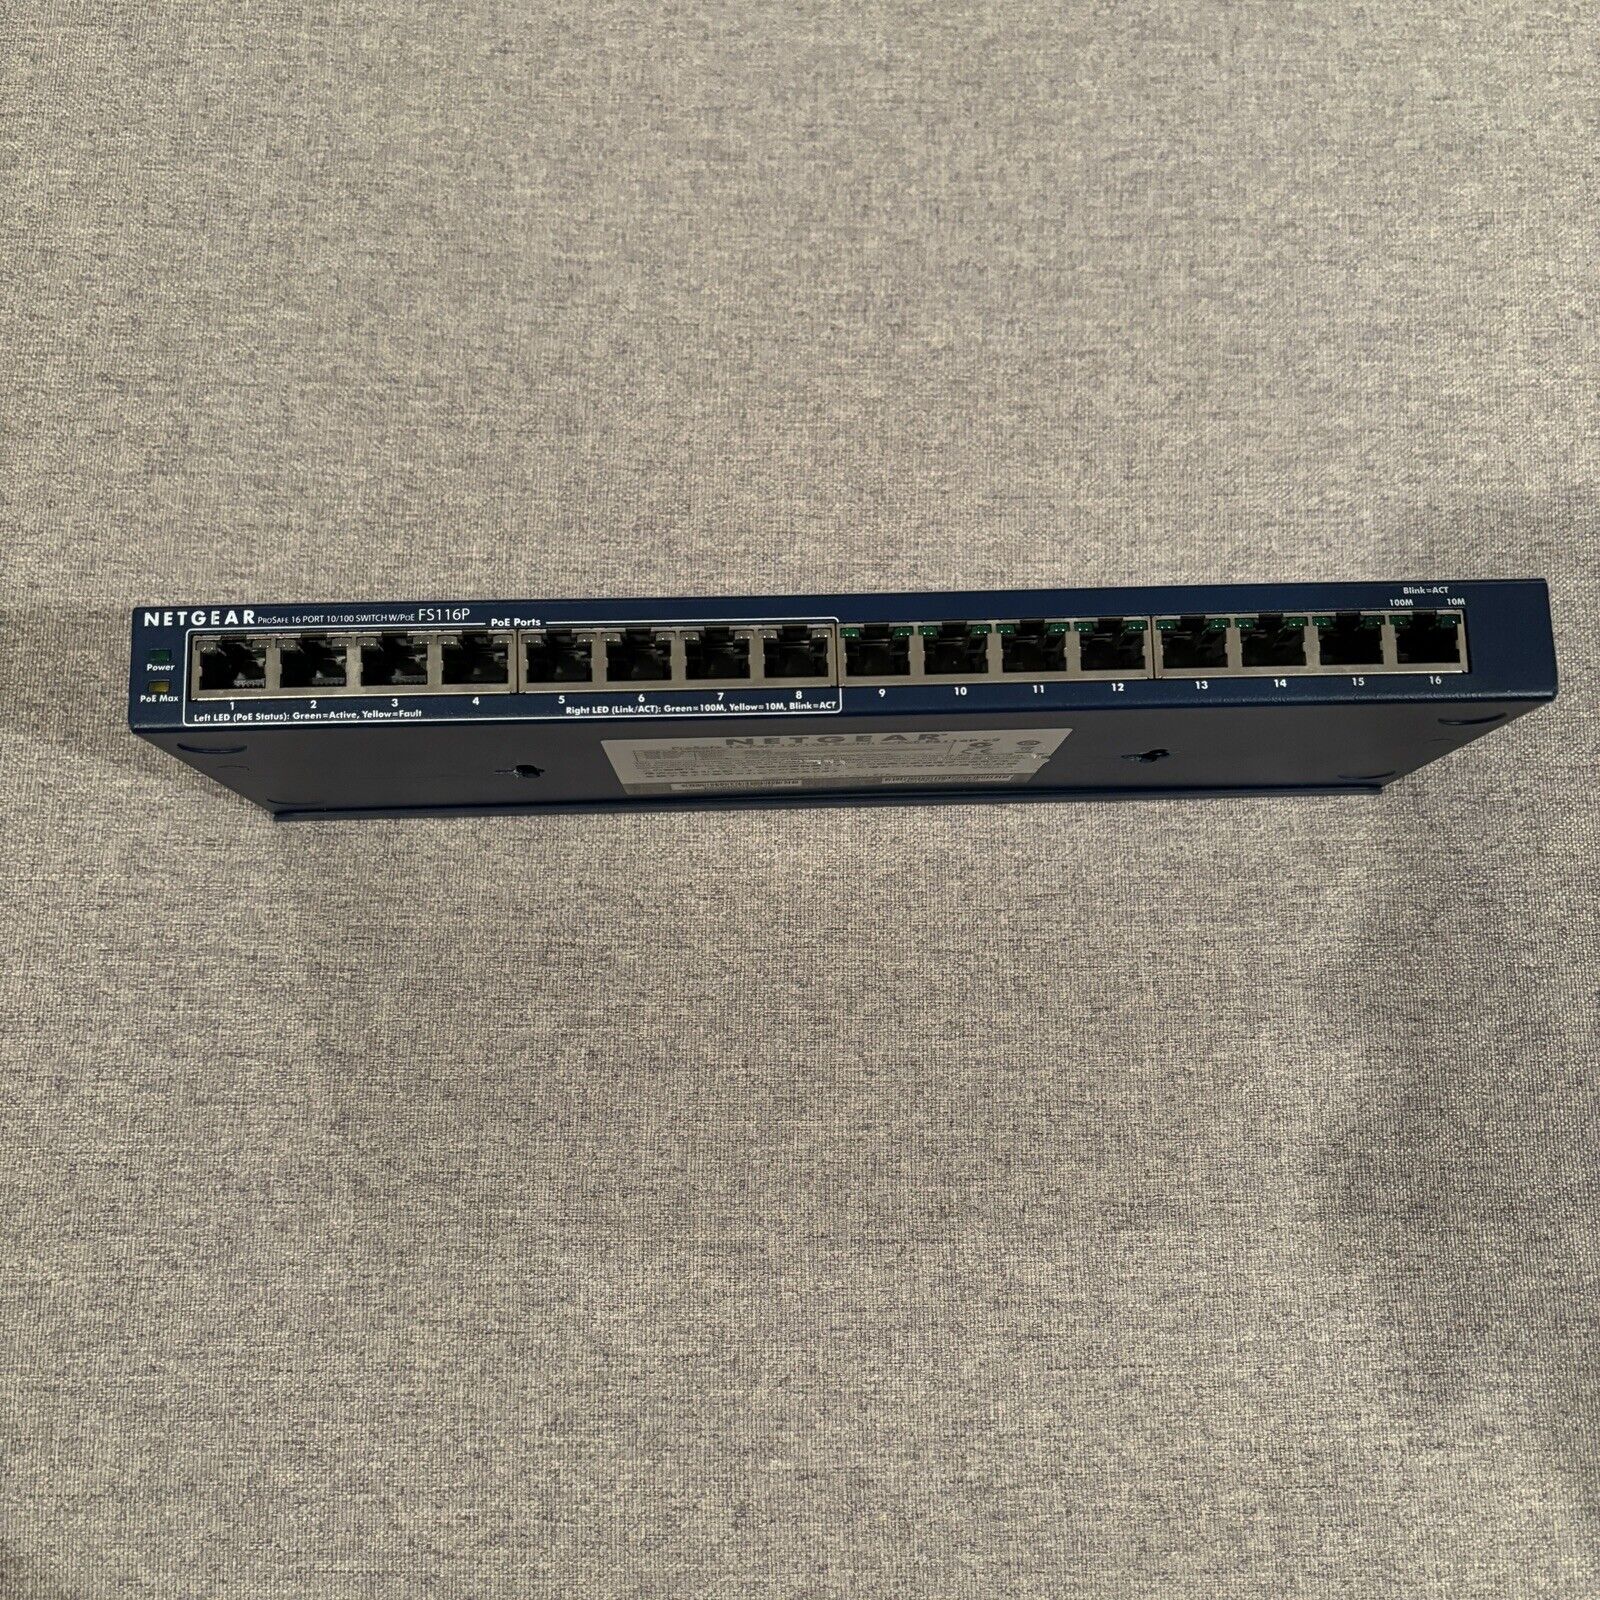 NetGear  ProSafe (FS116P) 16-Ports External Switch